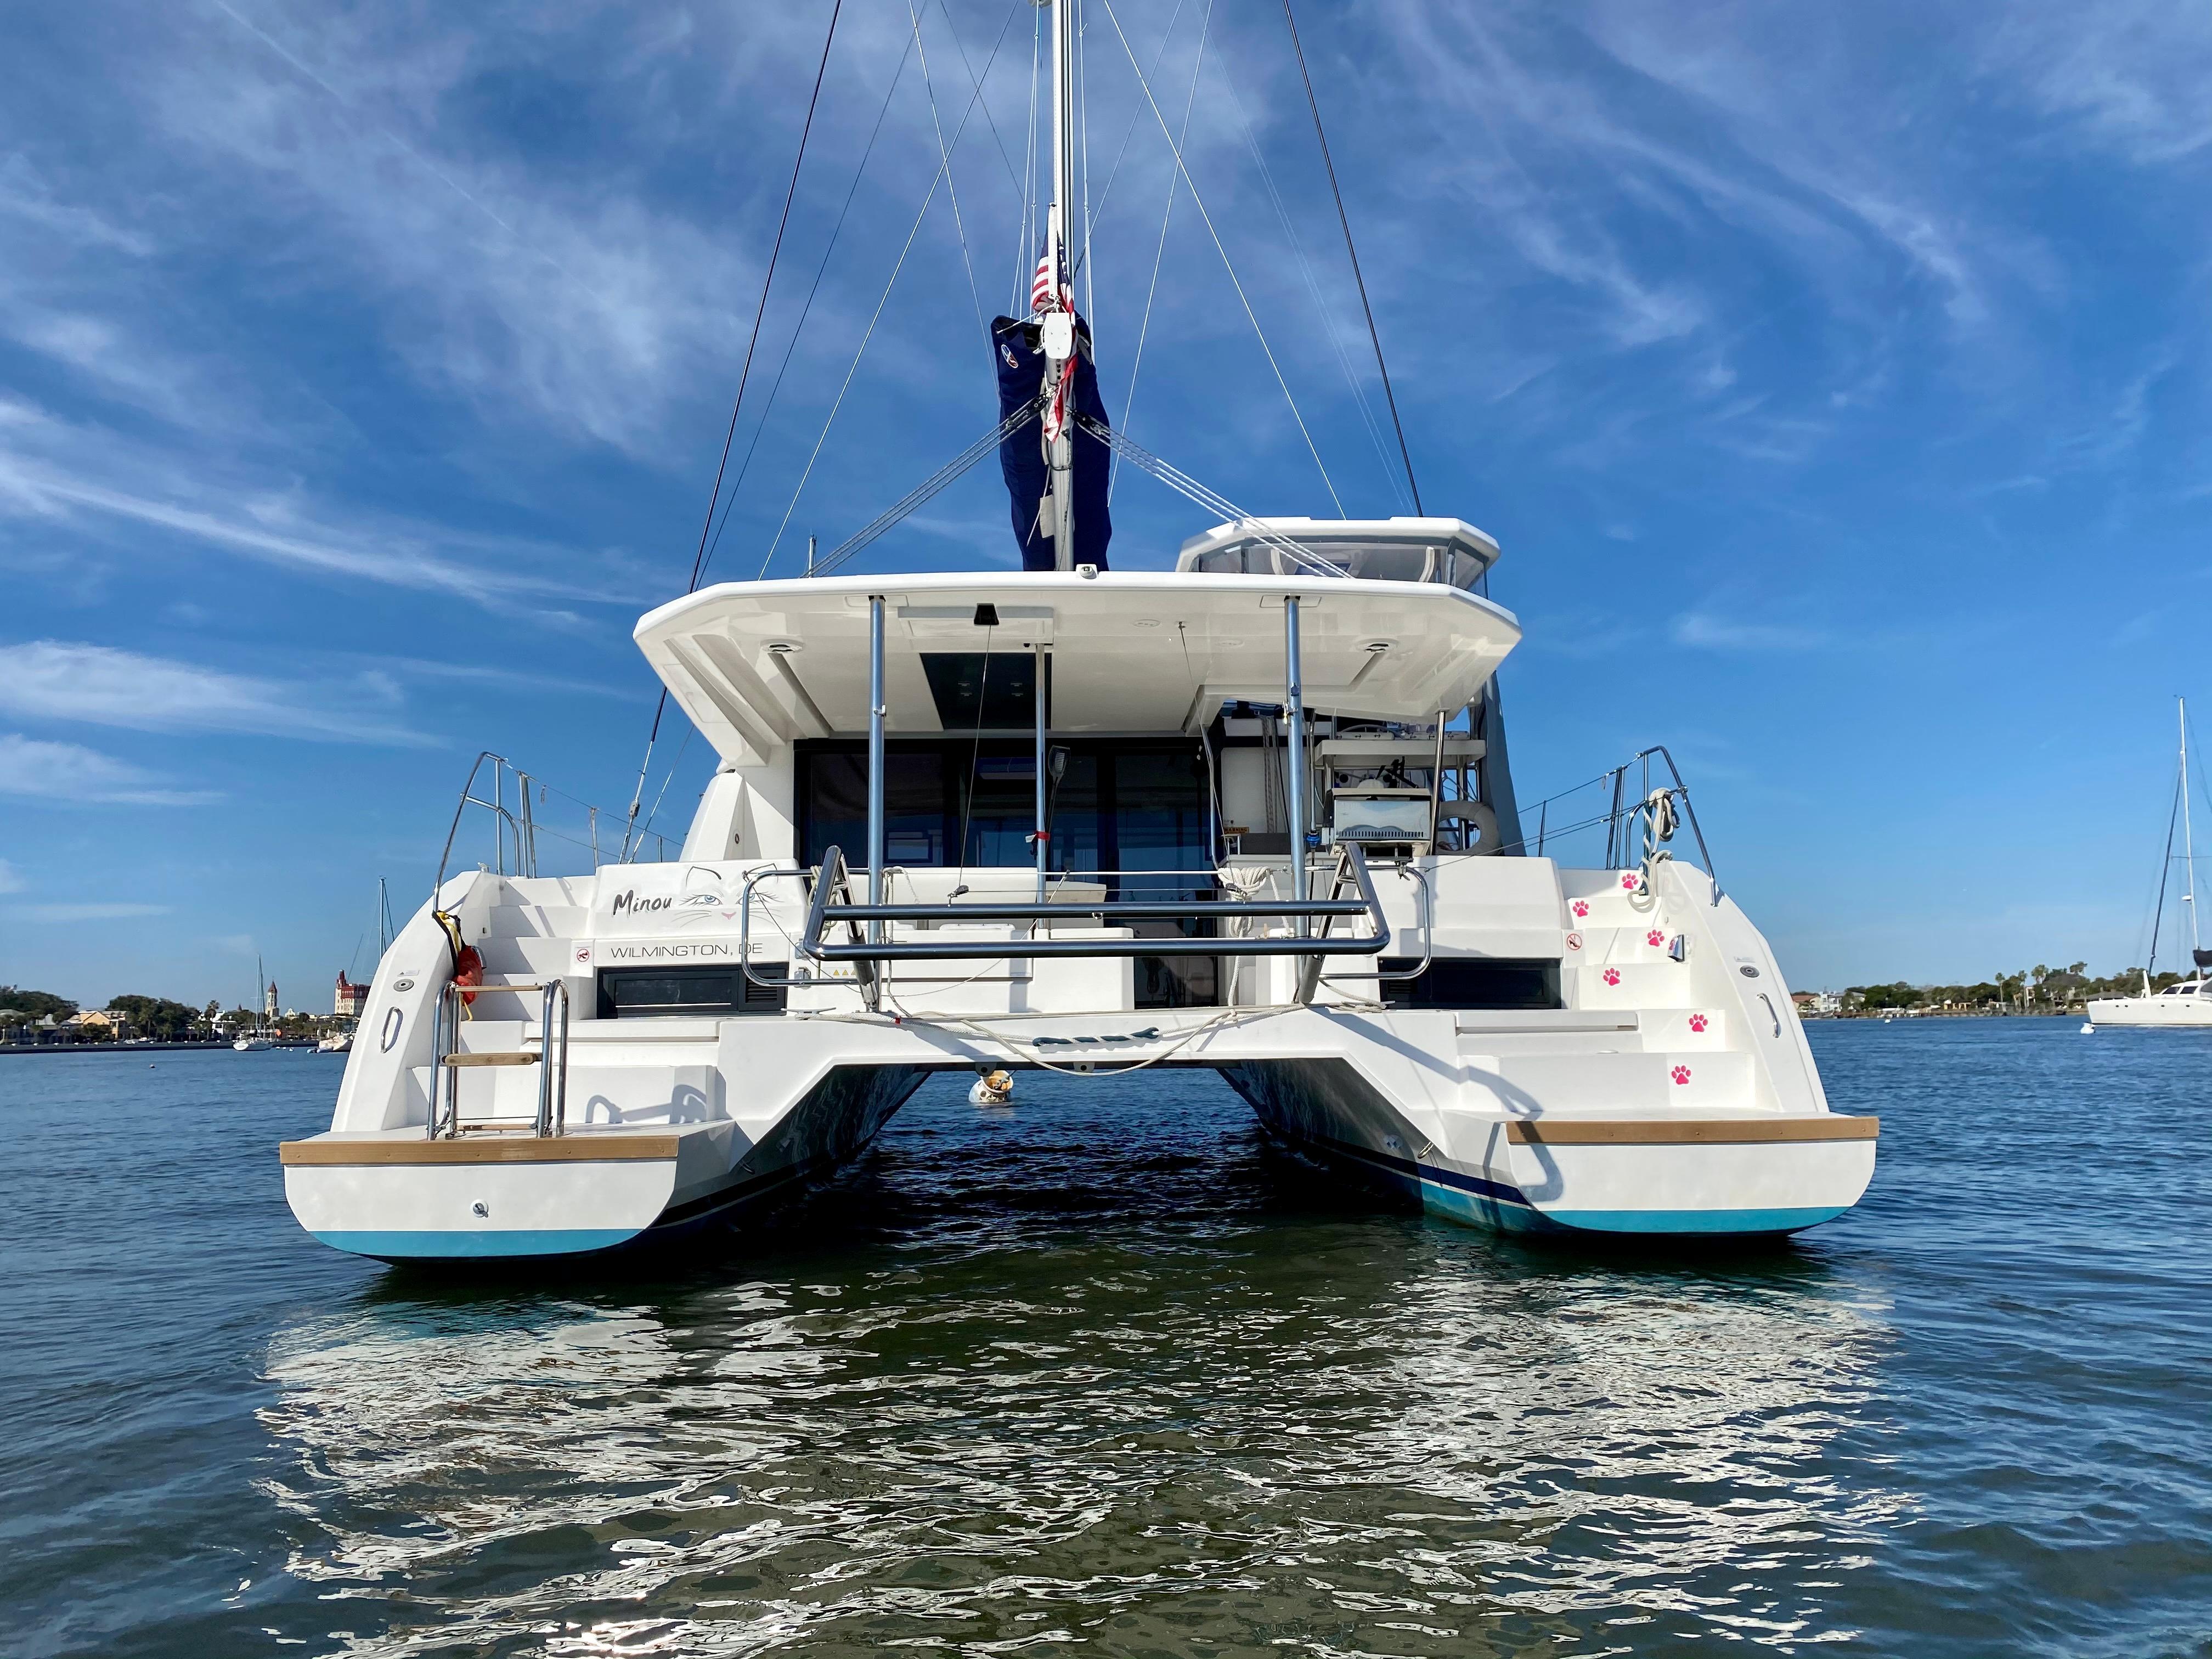 45 foot power catamaran for sale